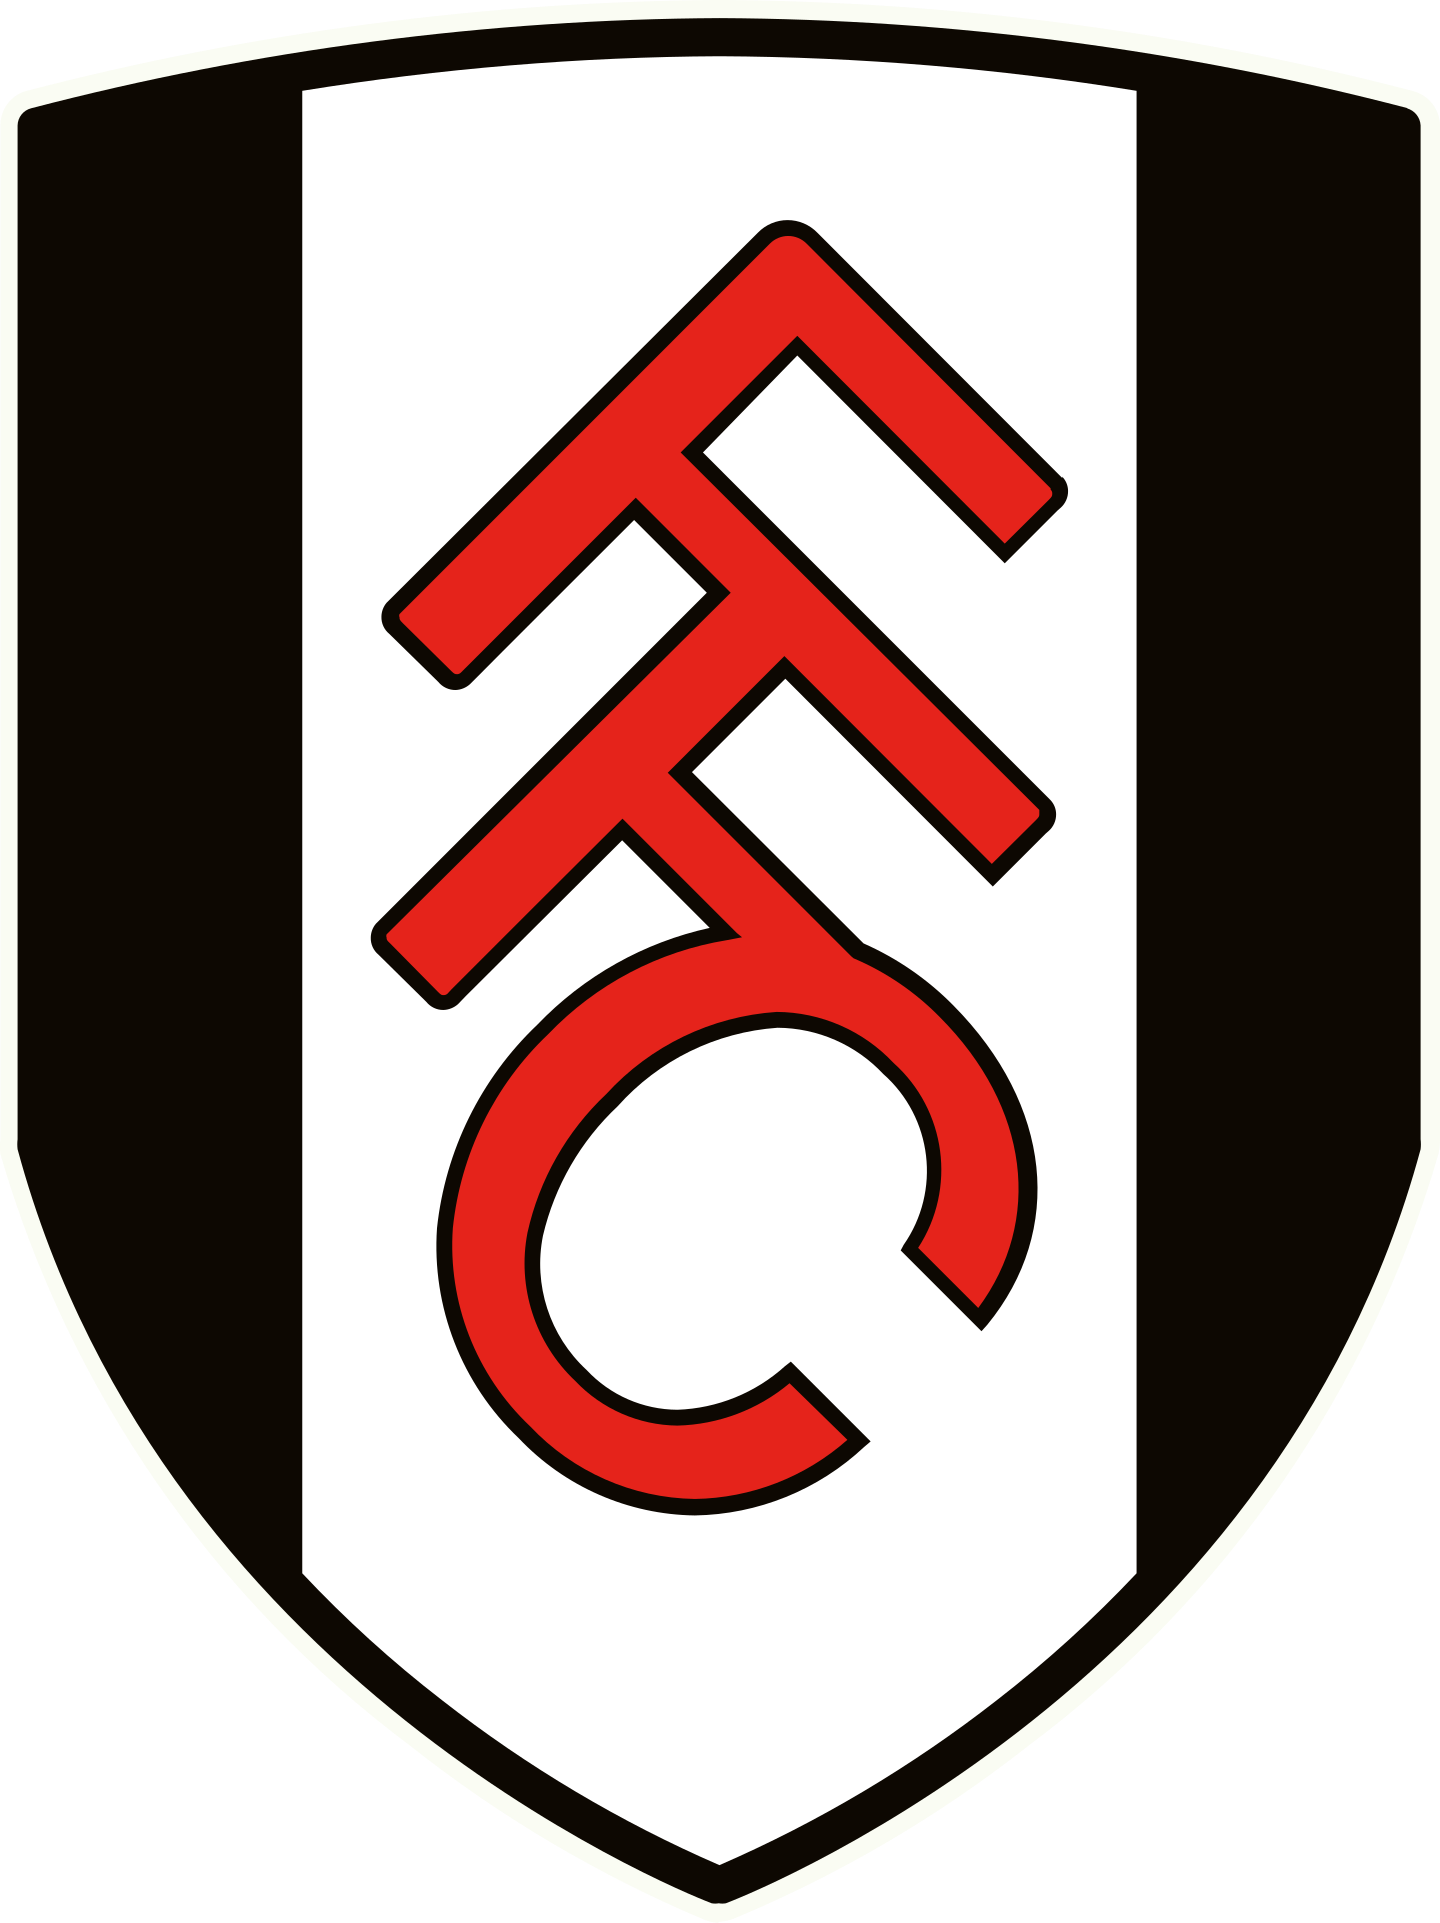 fulham fc logo 2 - Fulham FC Logo